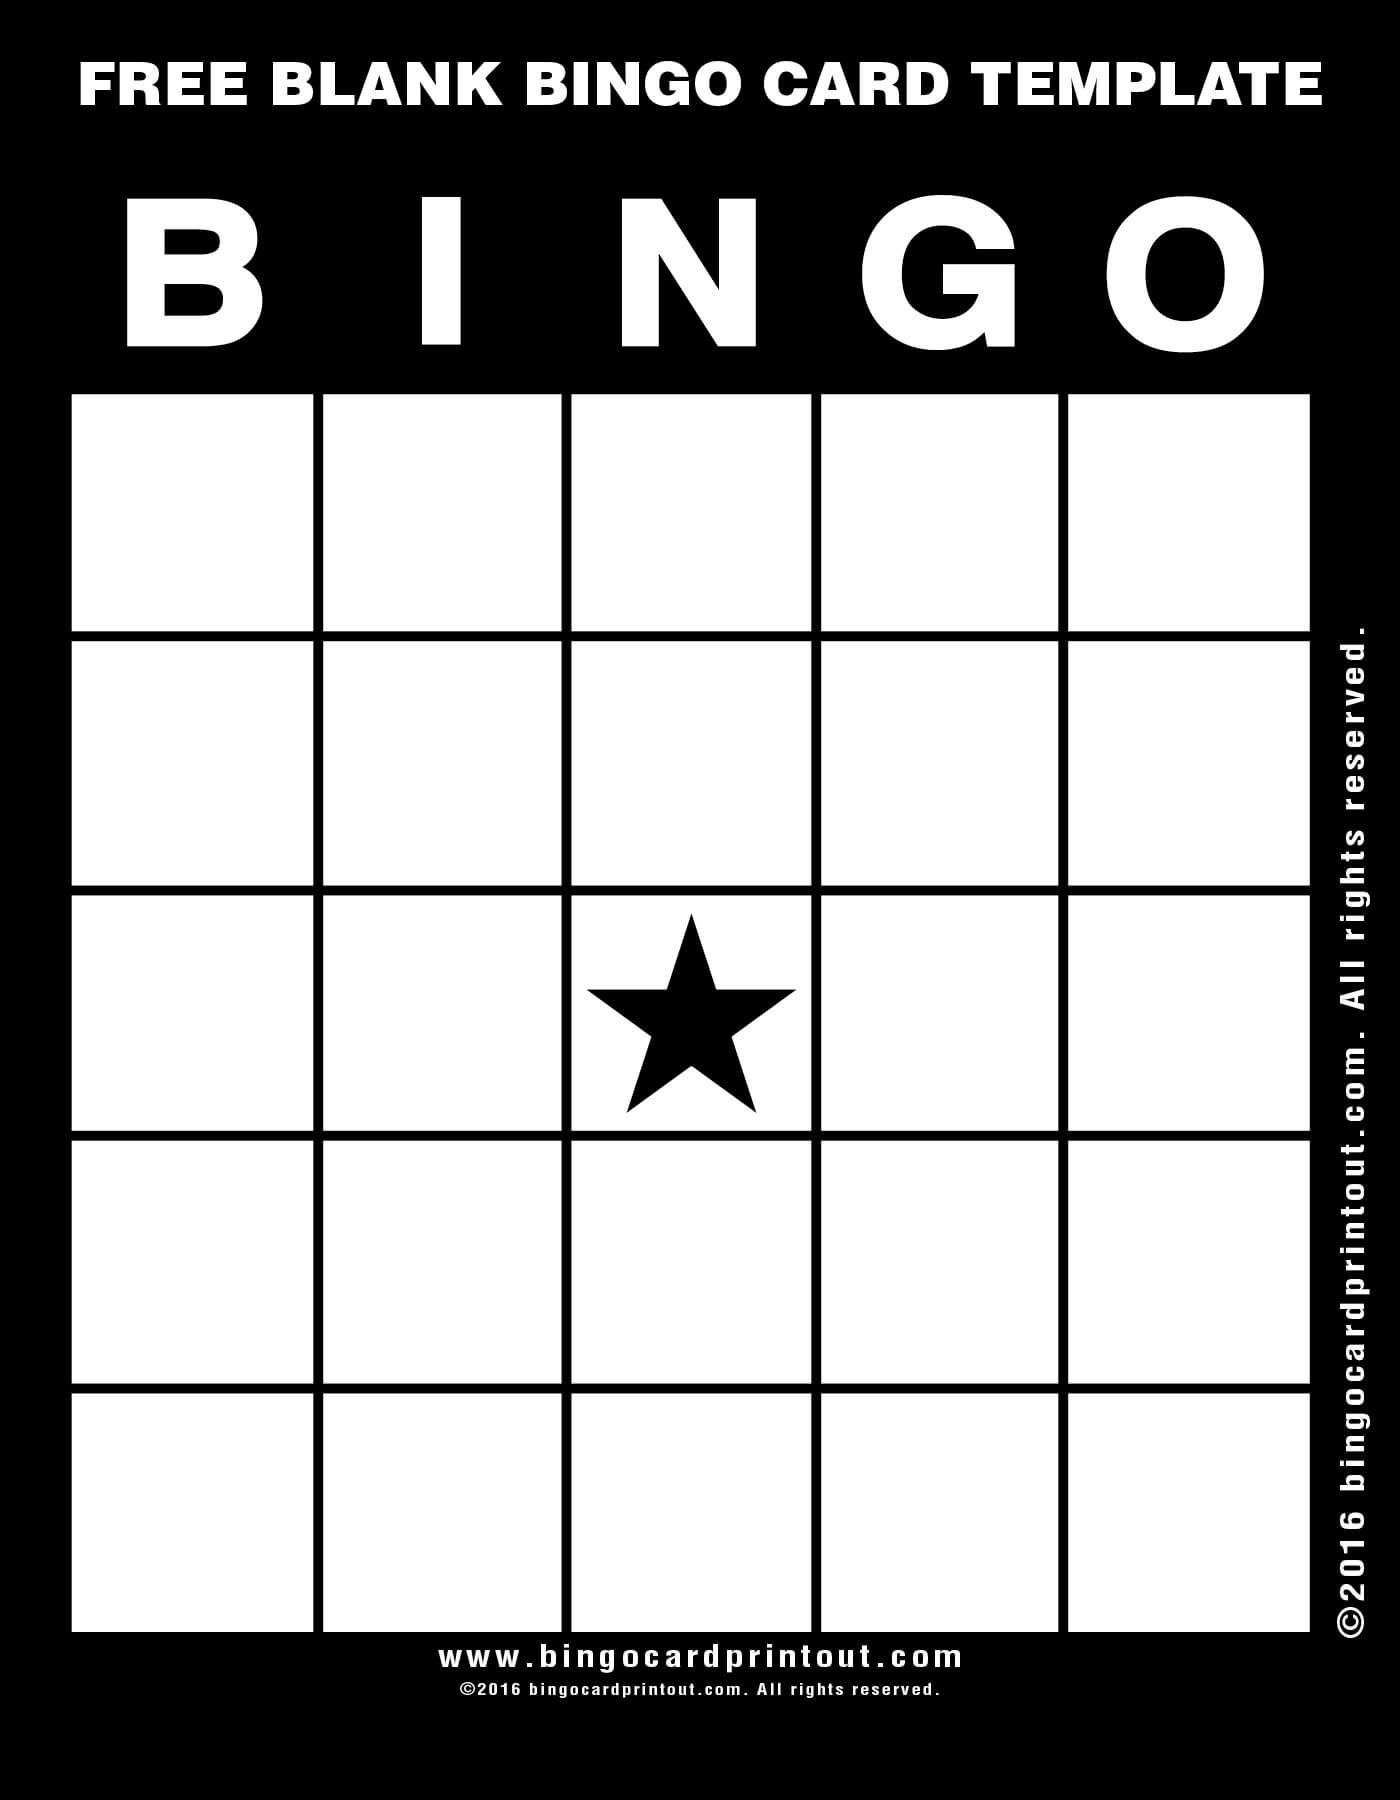 Bingo Template Free ] – Blank Bingo Template 15 Free Psd With Regard To Blank Bingo Template Pdf